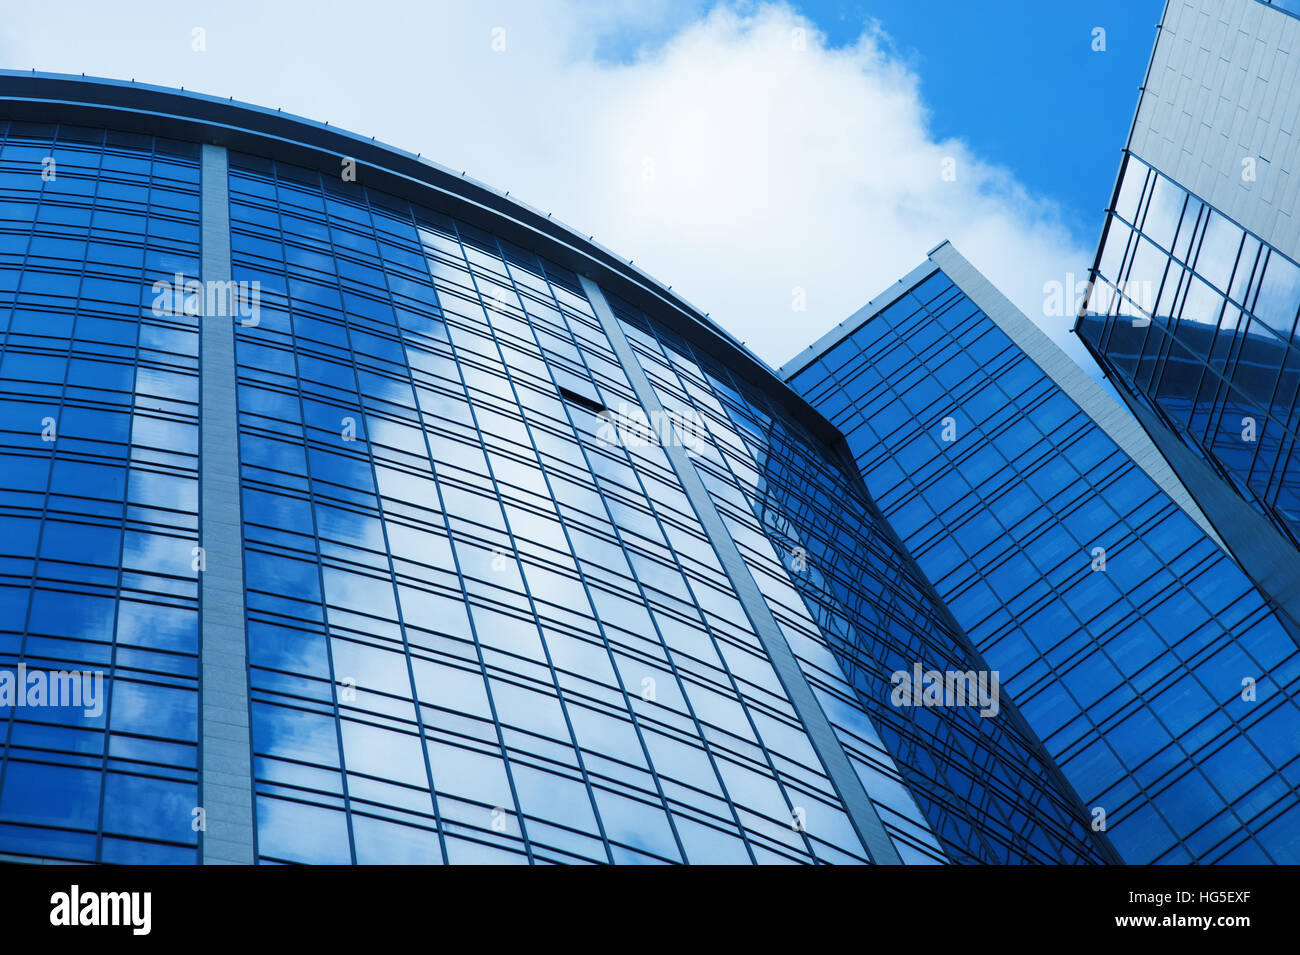 Location immeuble de bureaux en verre sur un fond du ciel Banque D'Images